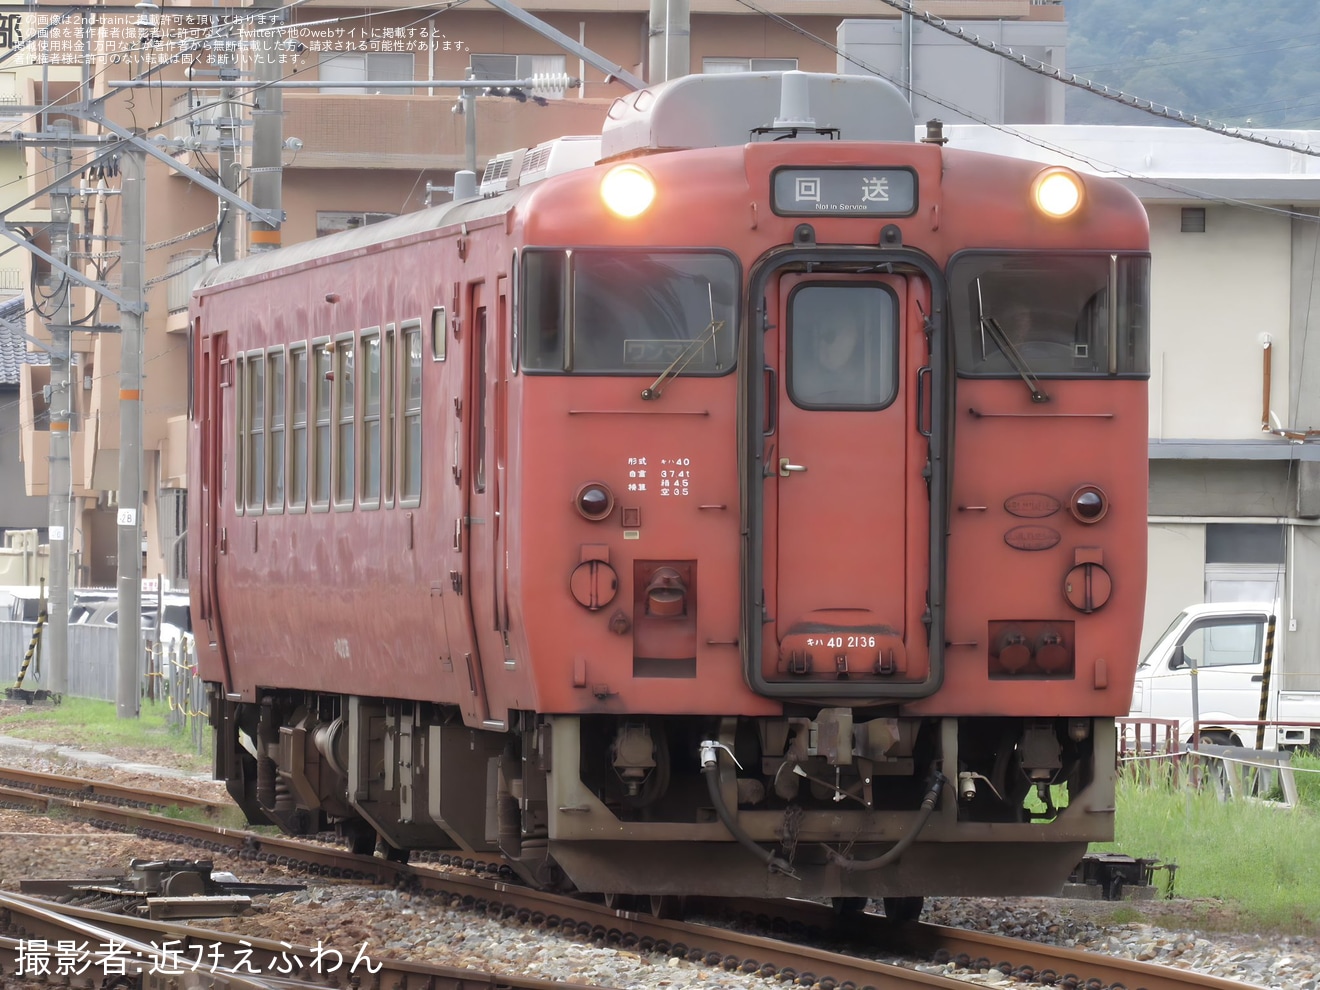 【JR西】キハ40-2136後藤総合車両所本所入場回送の拡大写真